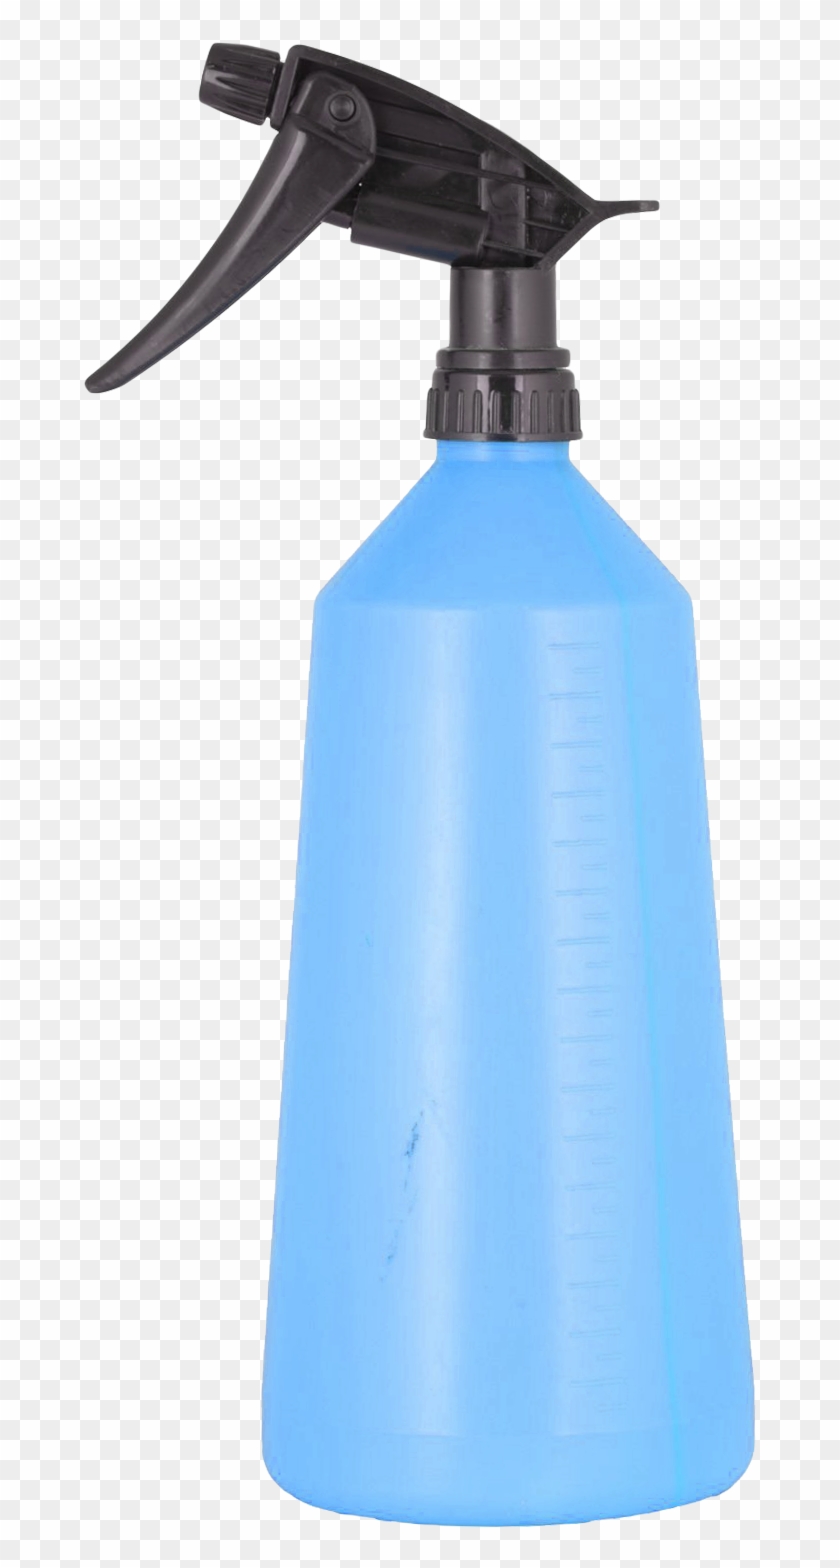 Spray Bottle Png Image - Spray Bottle Png #1289355